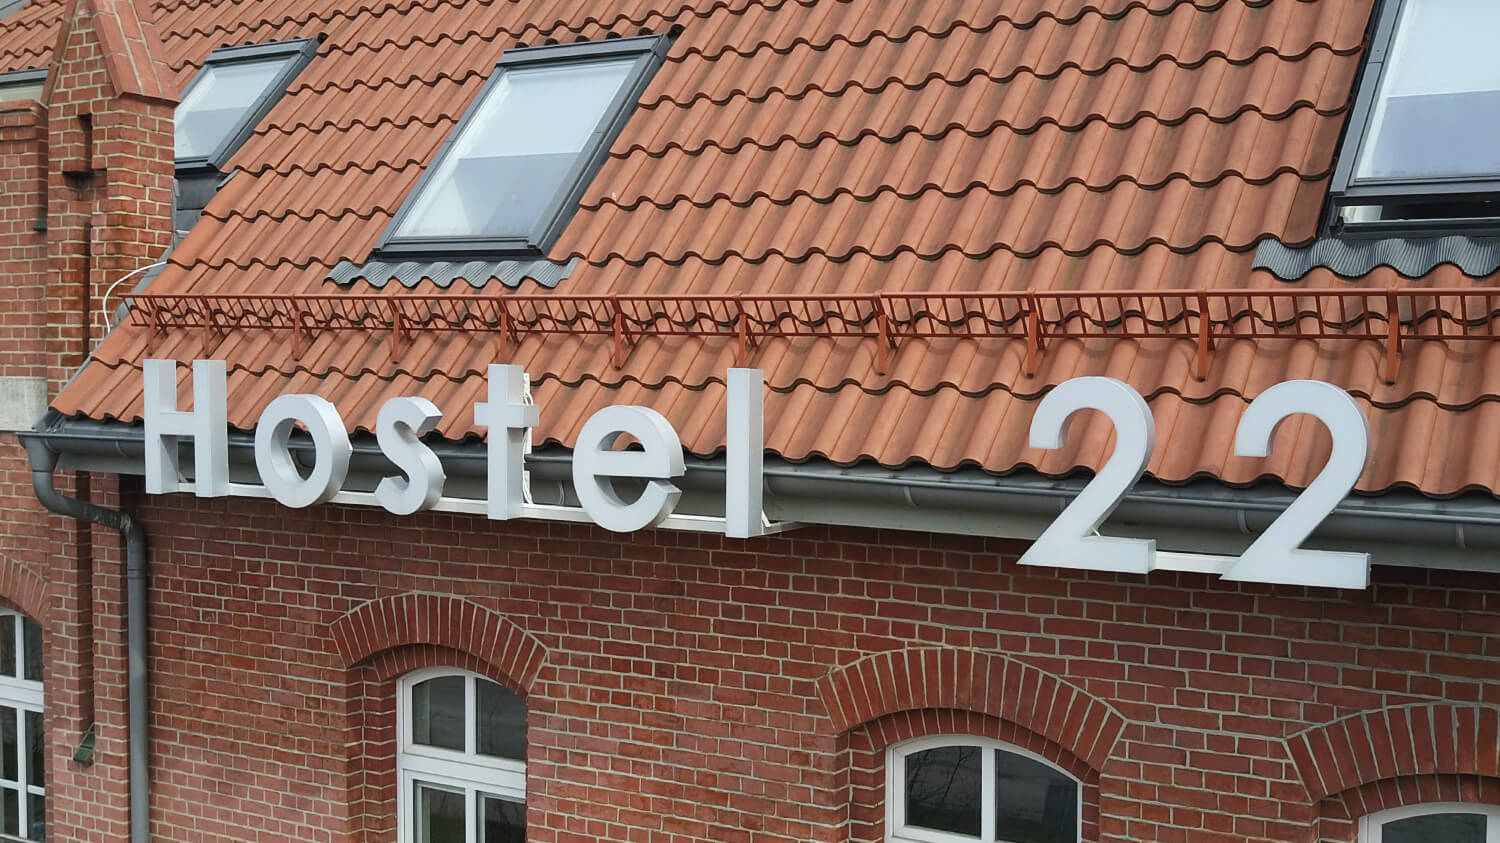 Herberge 22 - Hostel 22 - Räumliche Lichtbuchstaben an der Wand